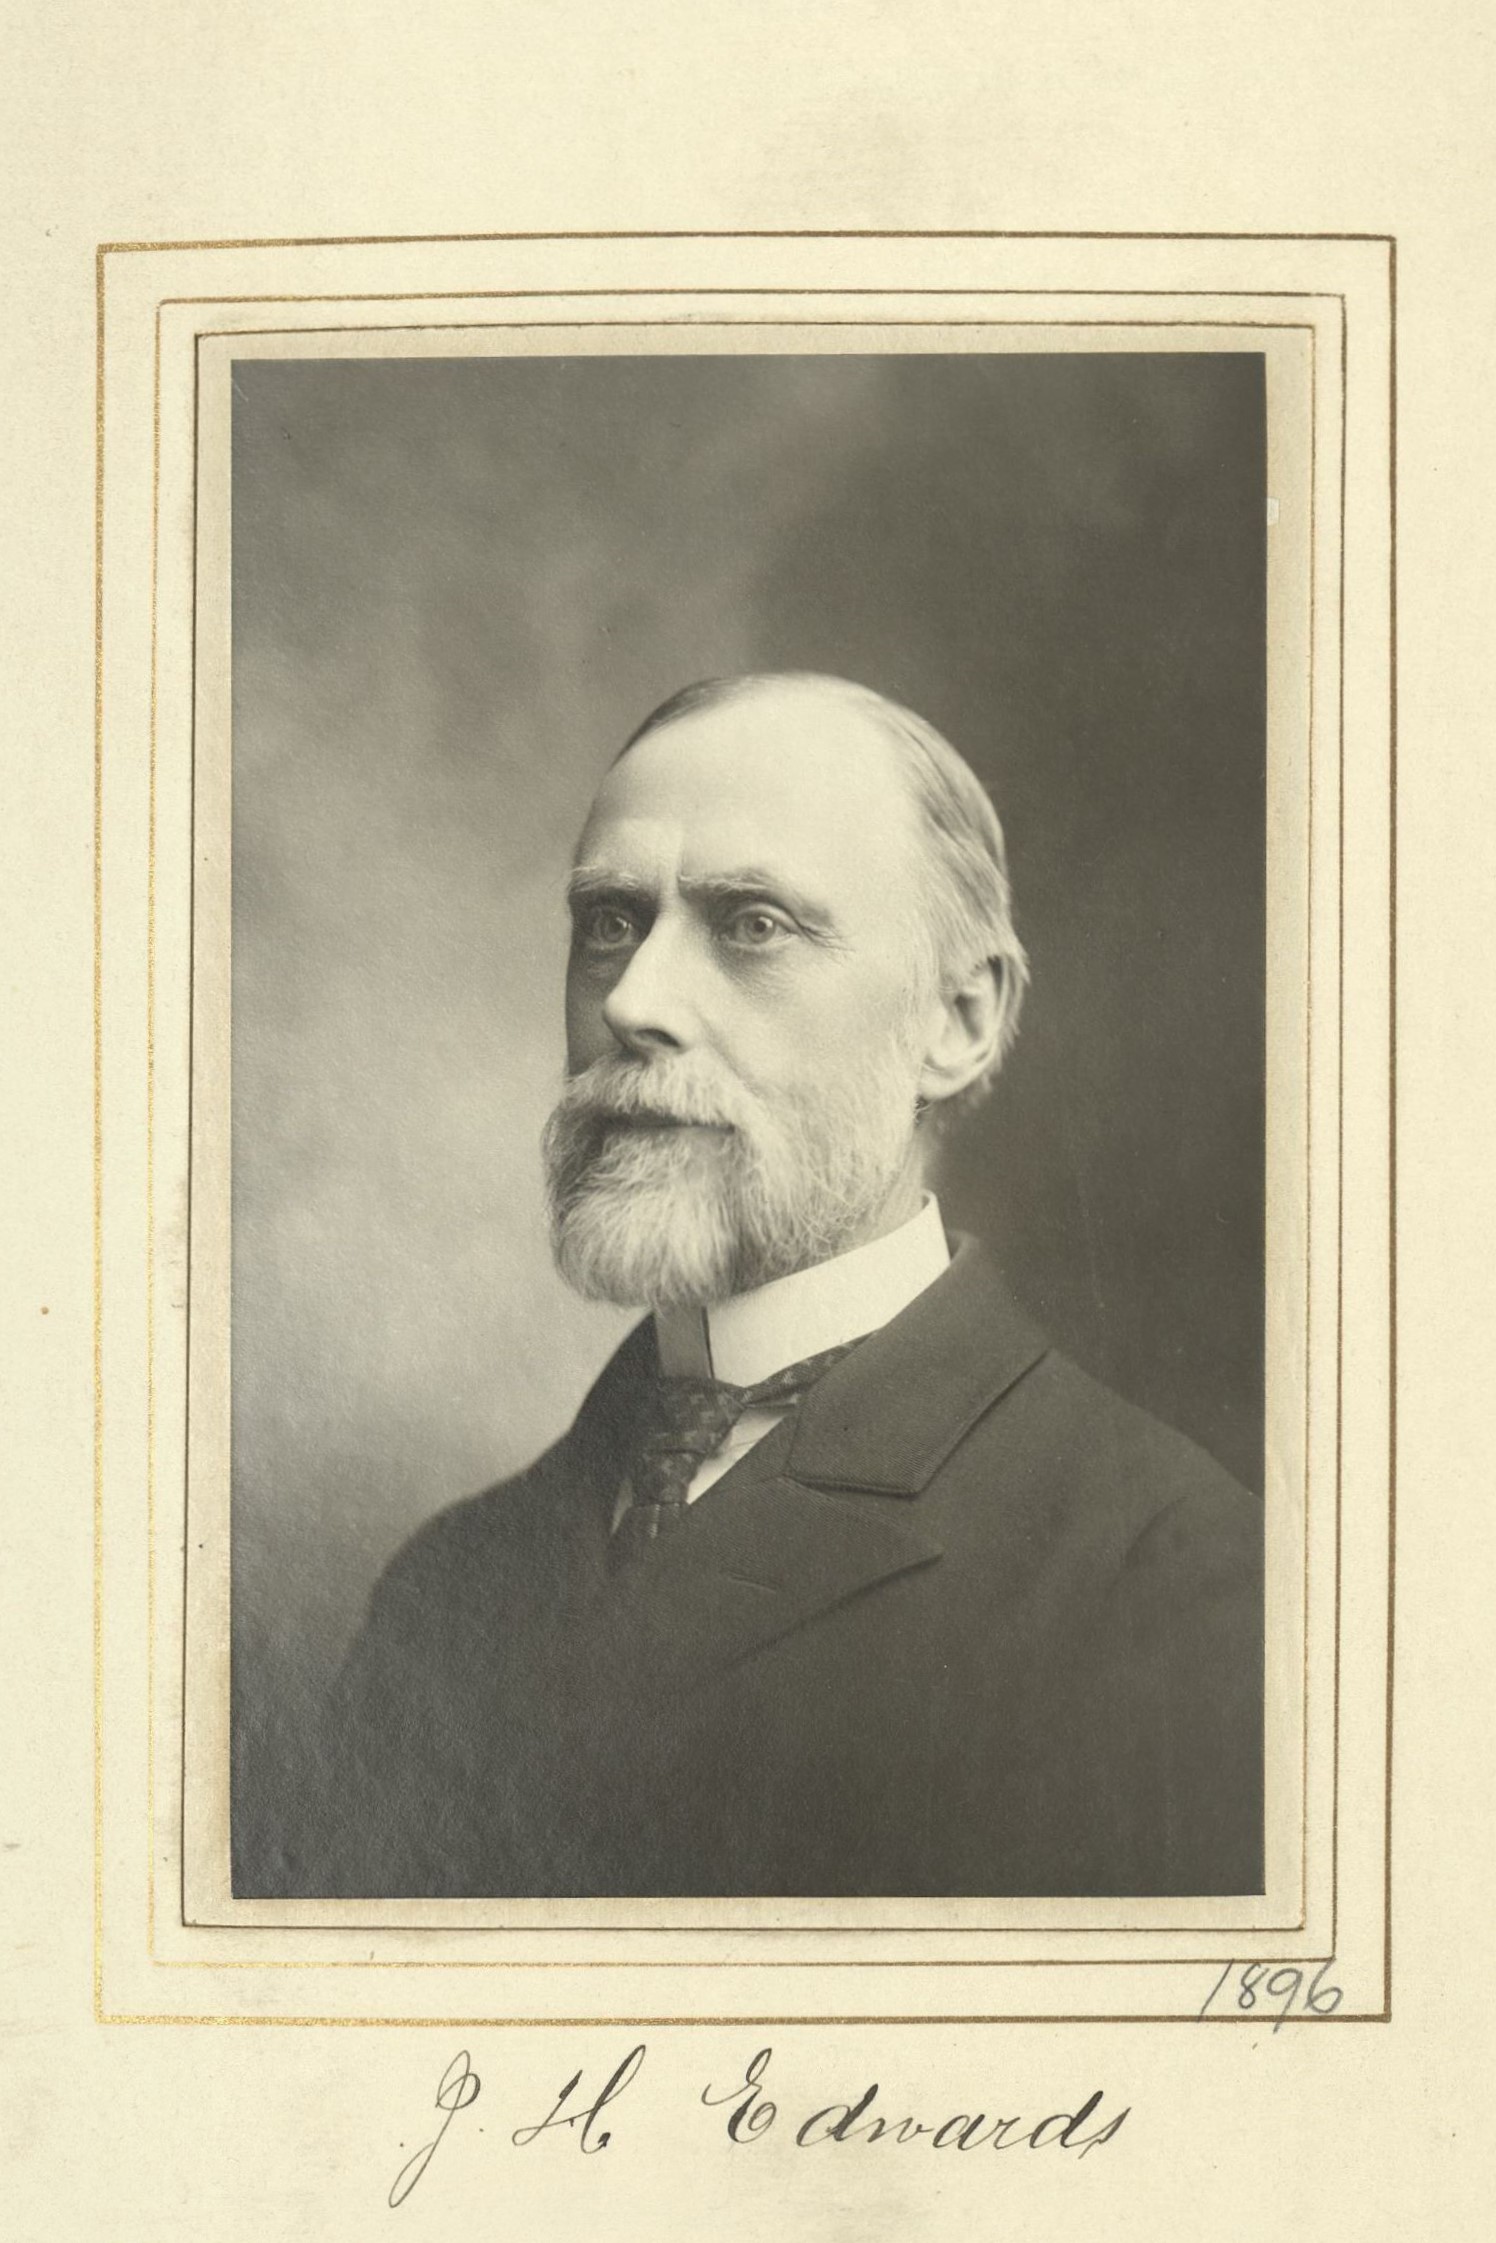 Member portrait of John H. Edwards